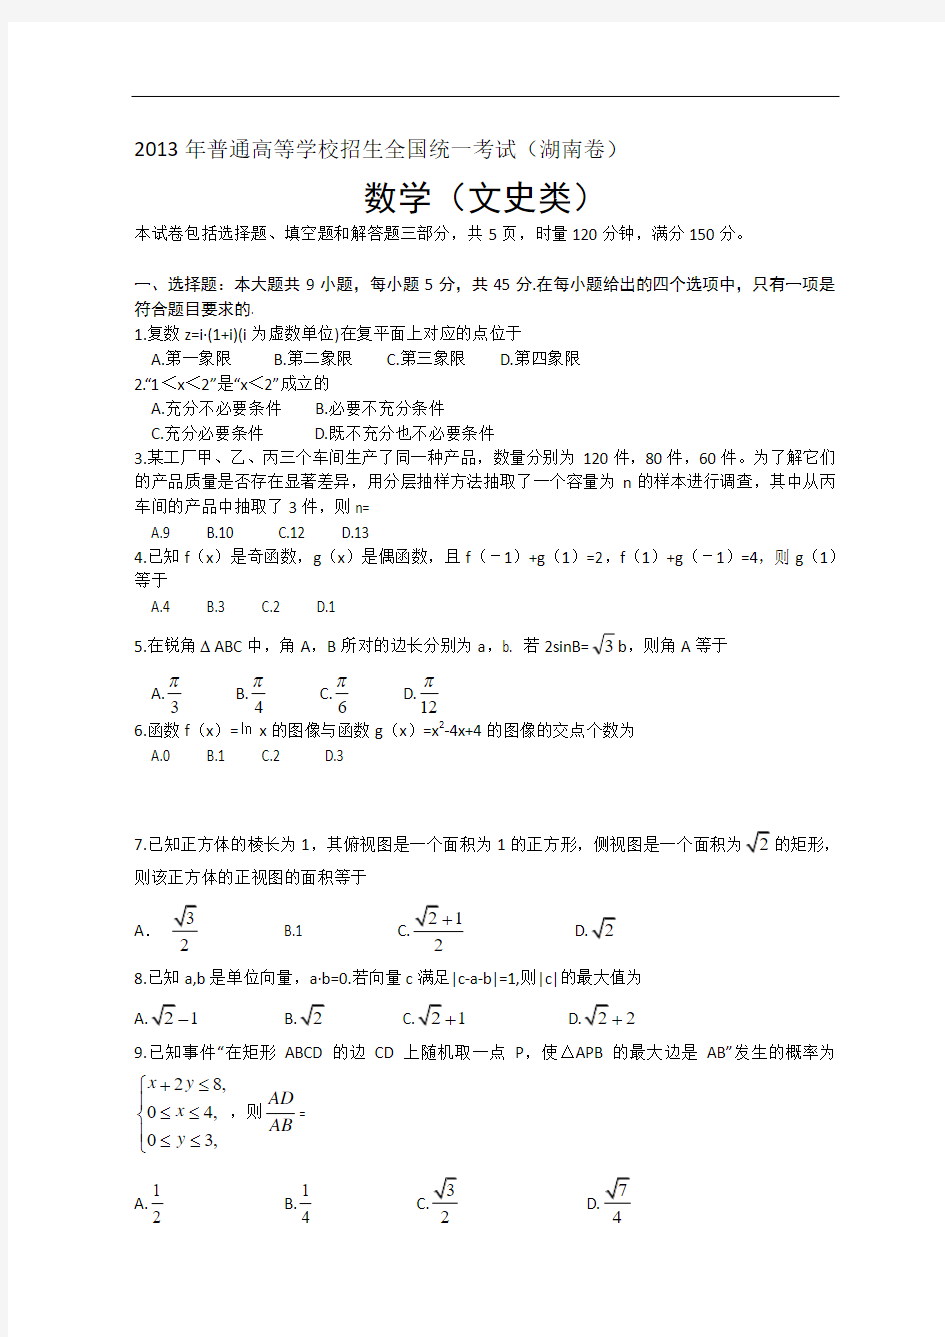 课间学习网—2013年全国高考文科数学试题及答案-湖南卷